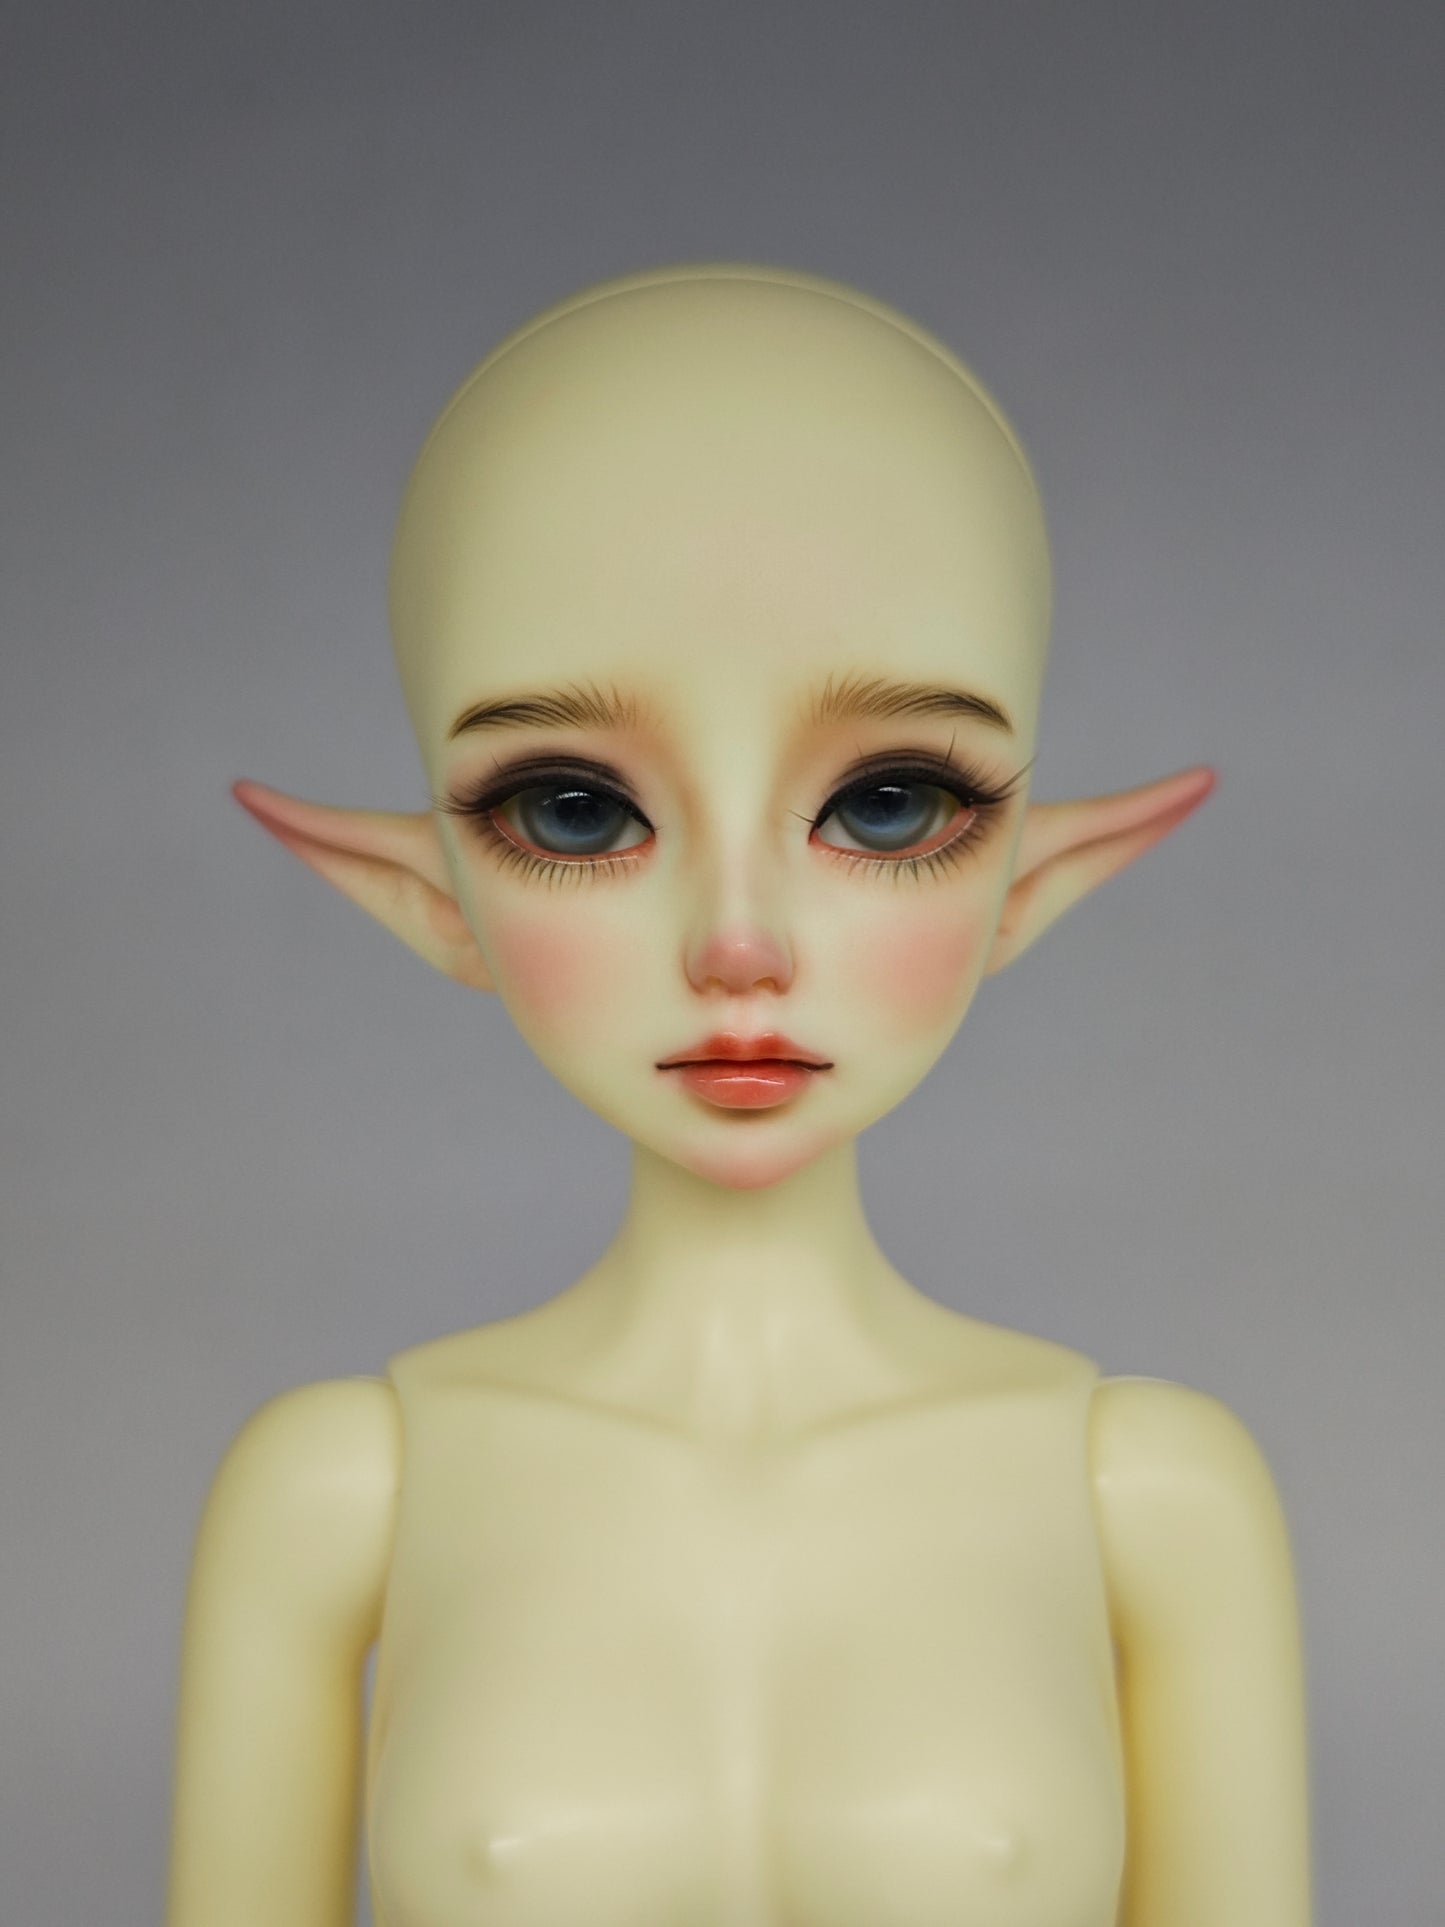 1/4 girl doll Alyssa in white skin with fullset